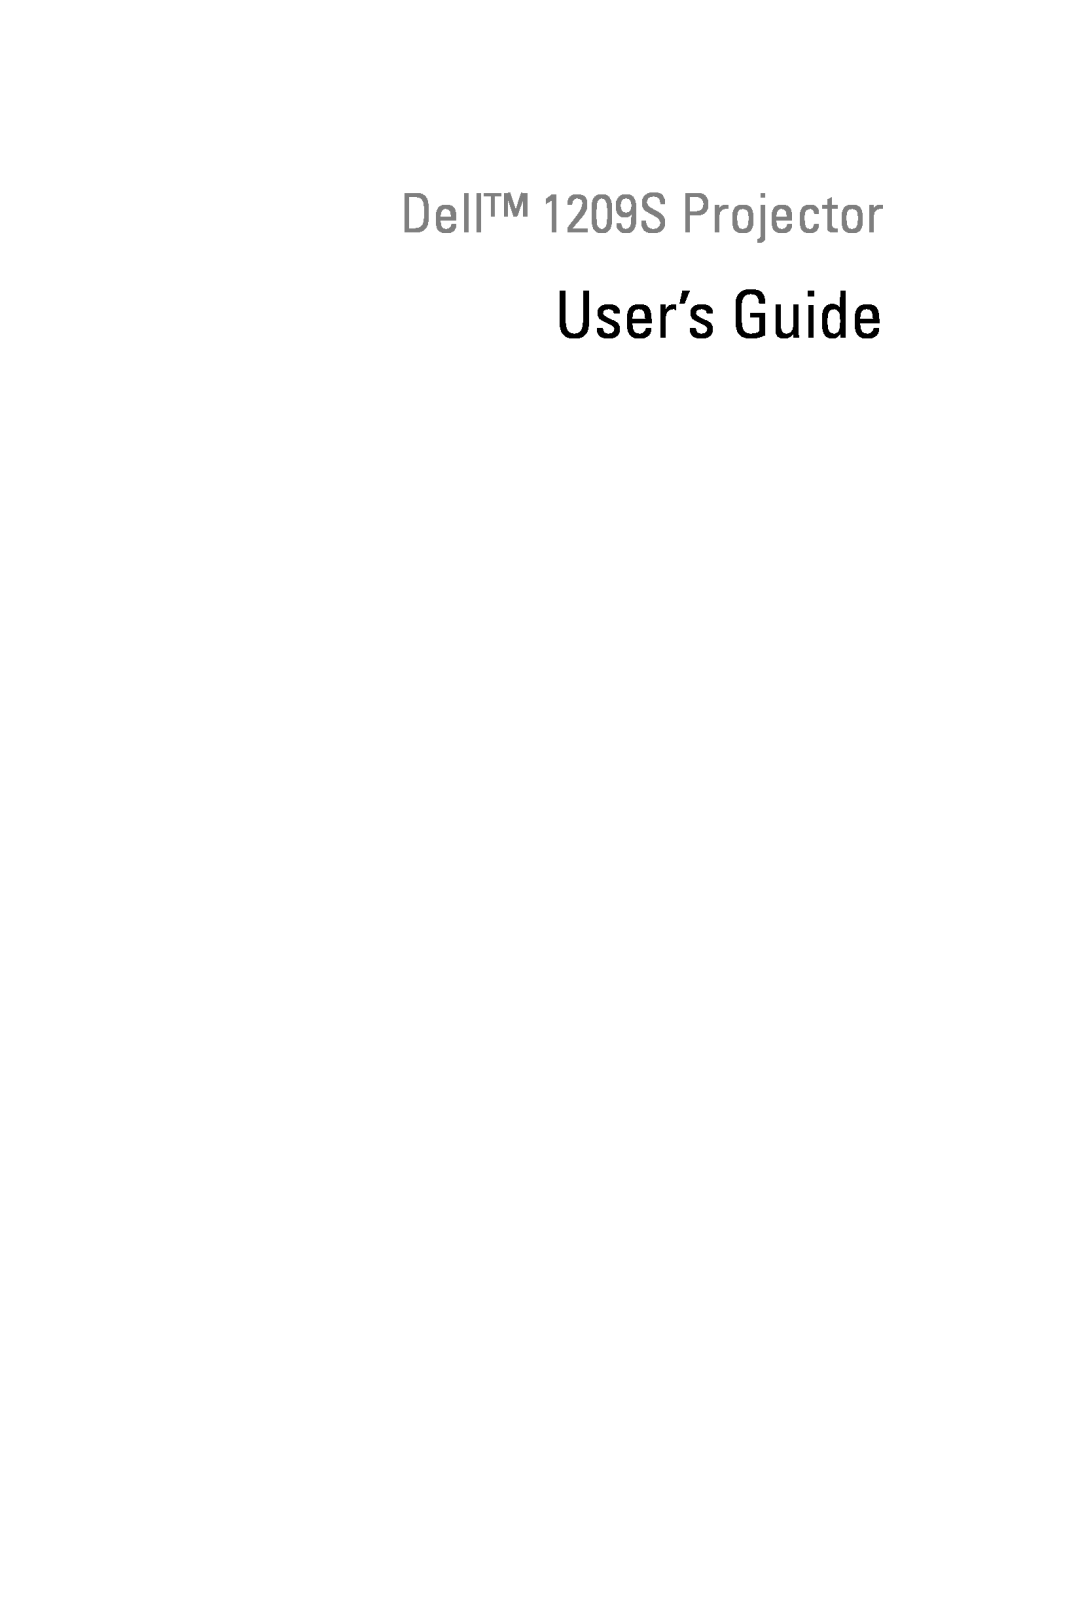 Dell manual User’s Guide, Dell 1209S Projector 